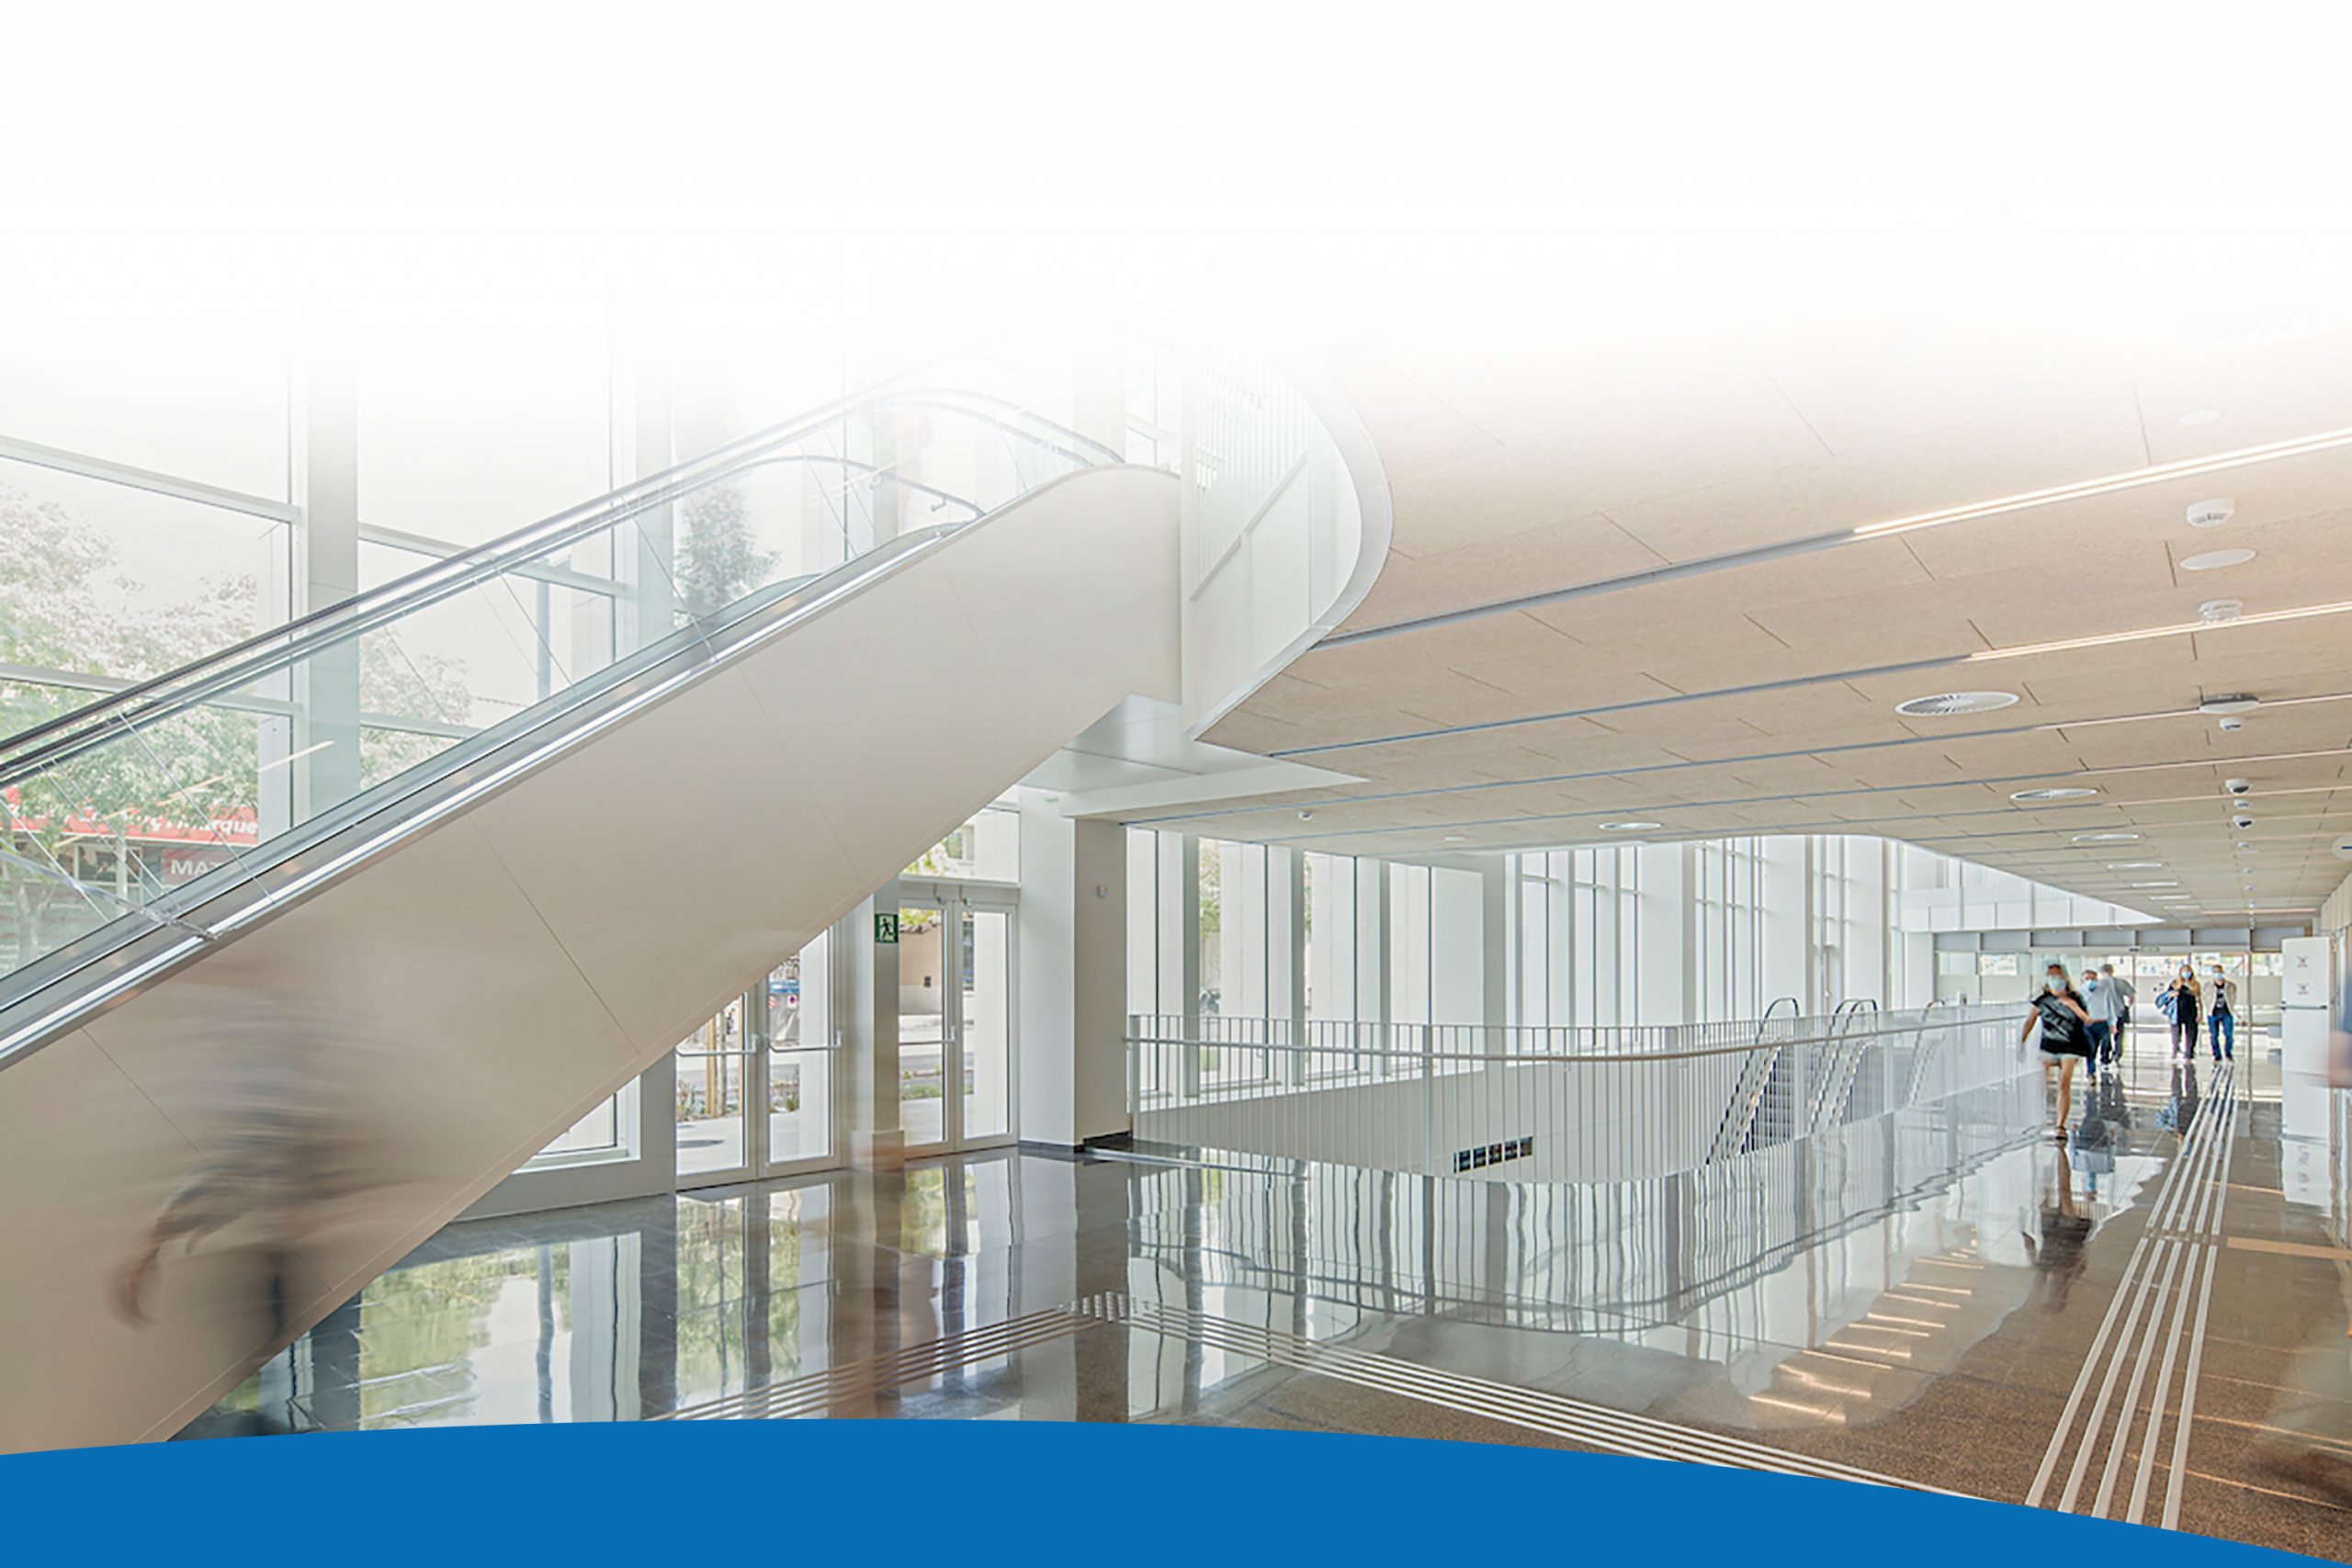 Vista de les instal·lacions interiors de la Clínica, amn escales mecàniques per facilitar l'accessibilitat.